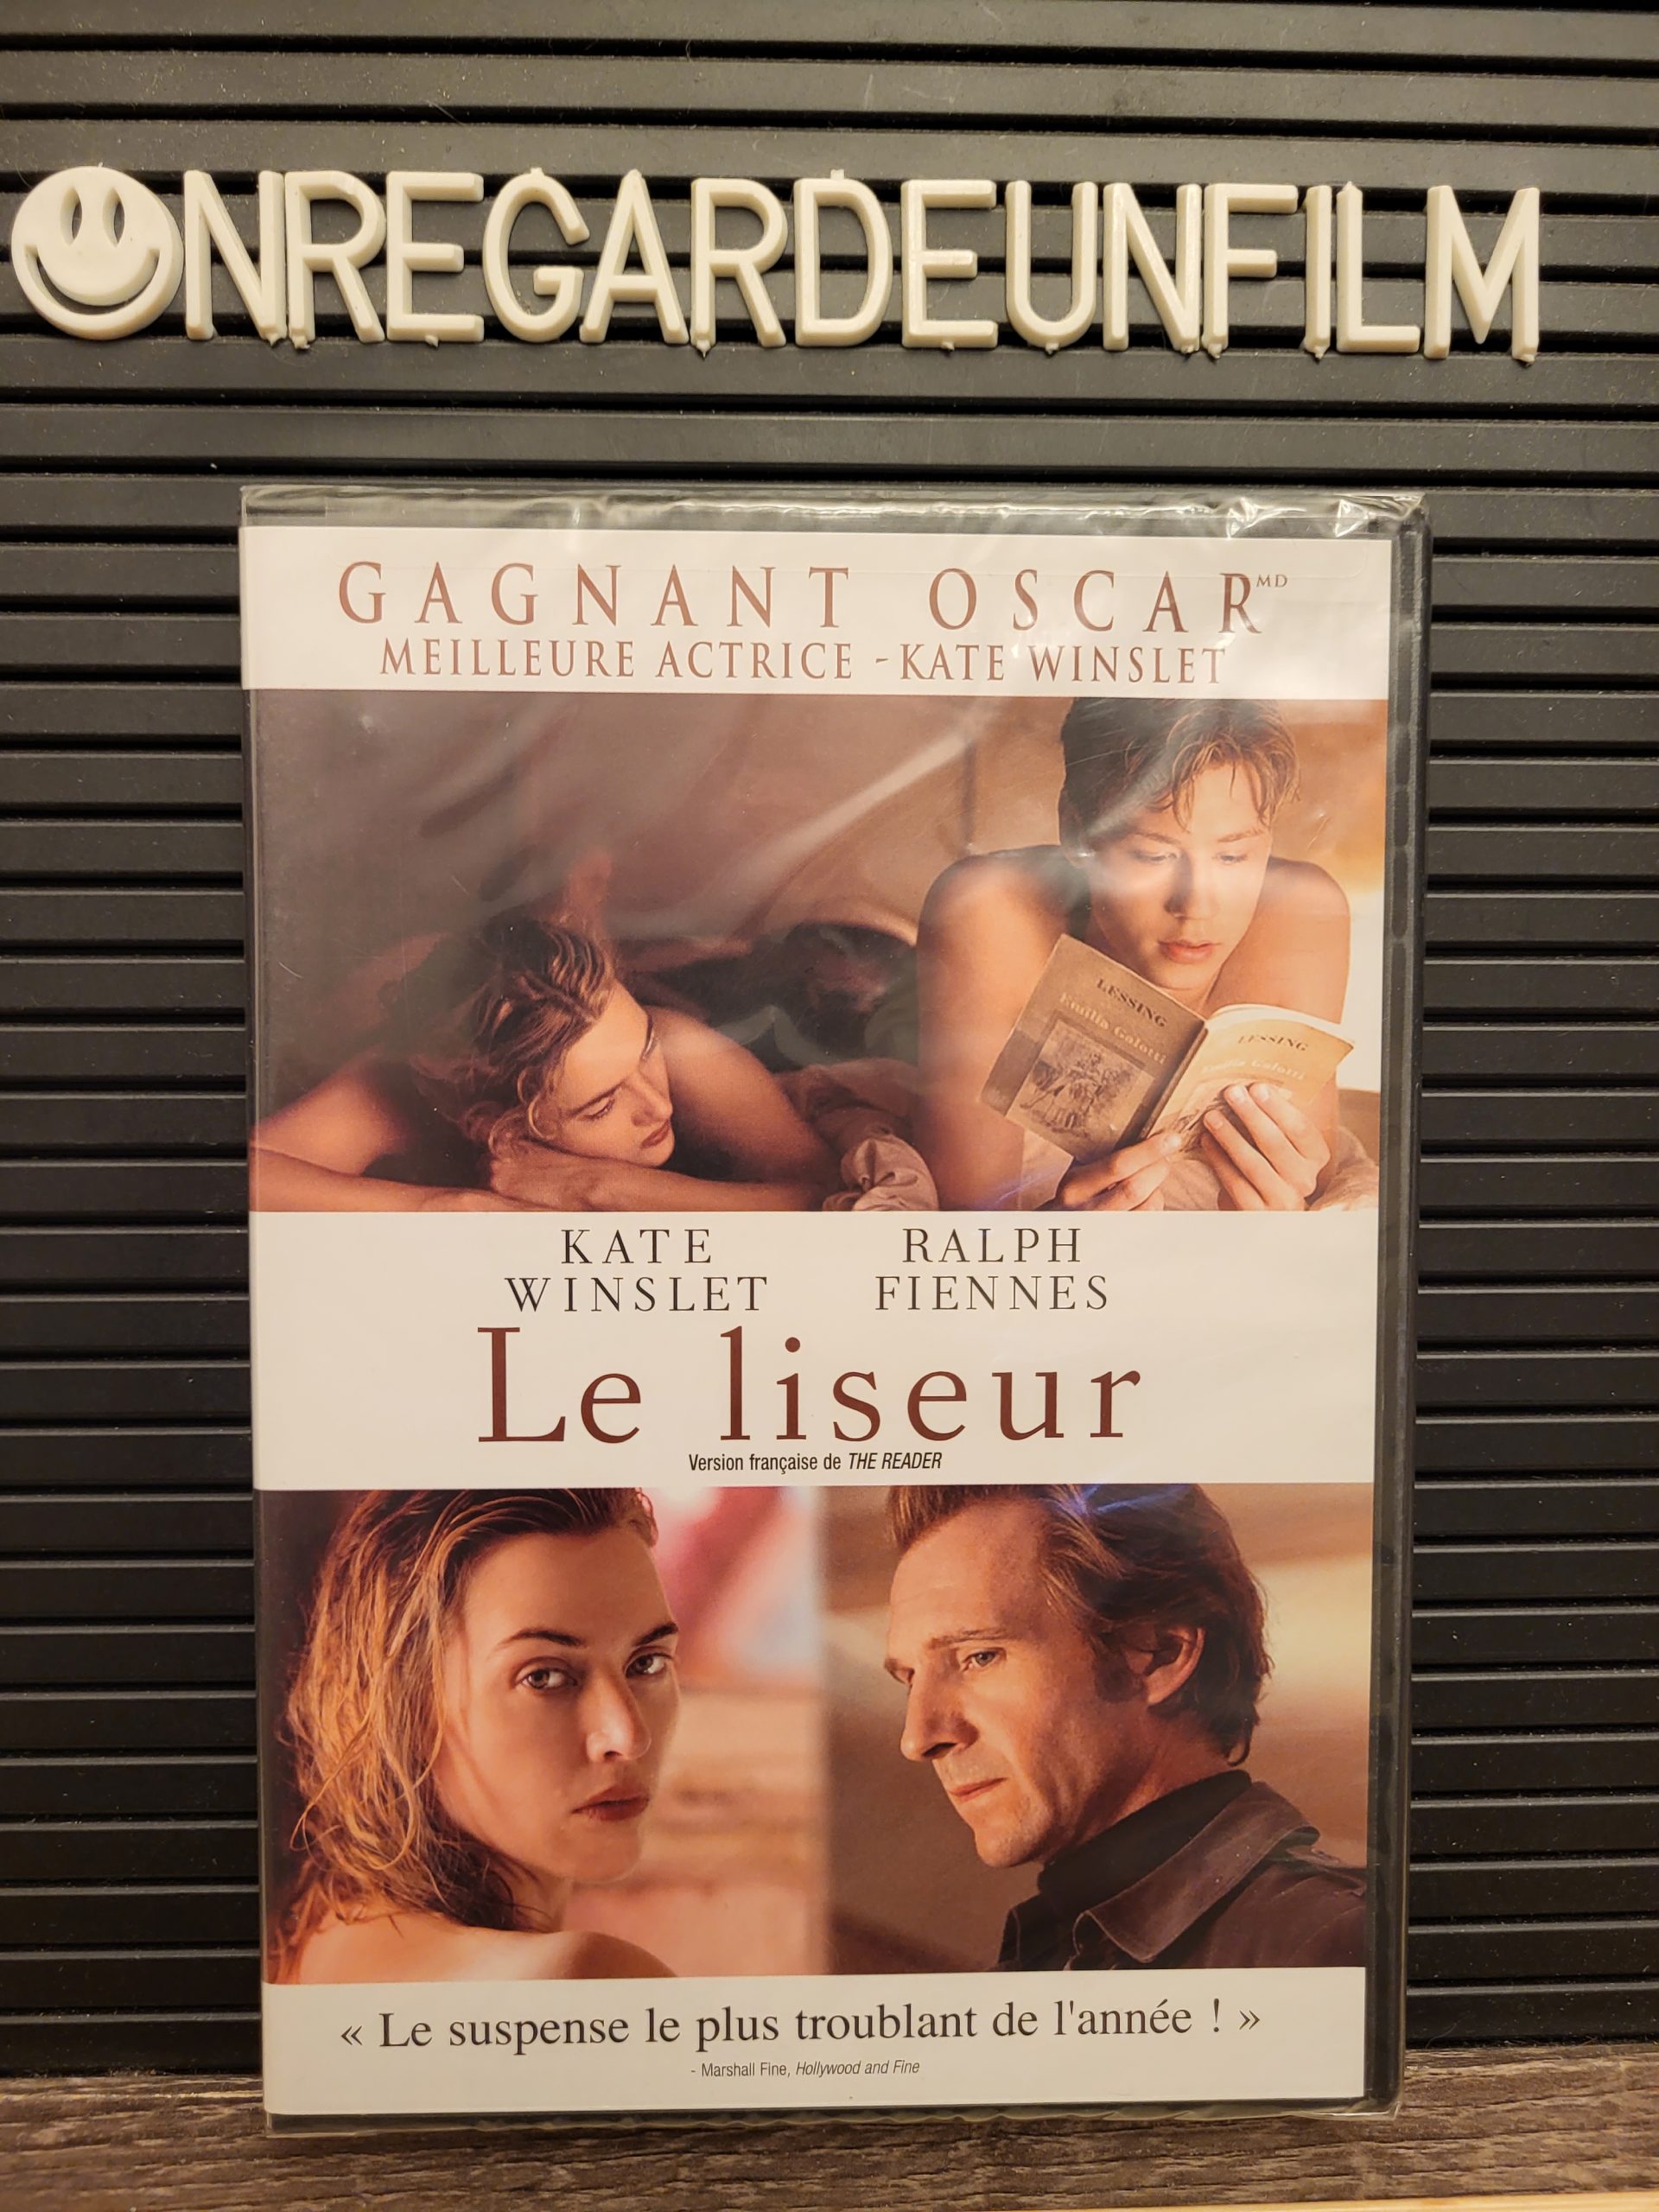 Le Liseur (The reader)